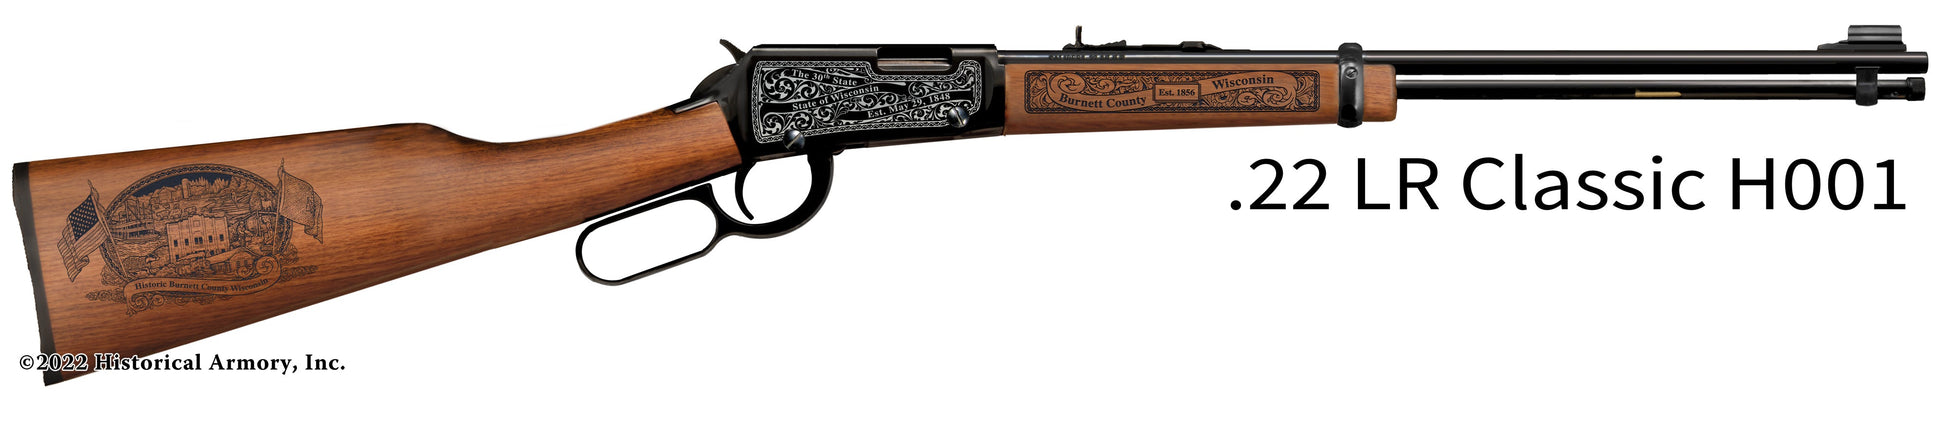 Burnett County Wisconsin Engraved Henry H001 Rifle